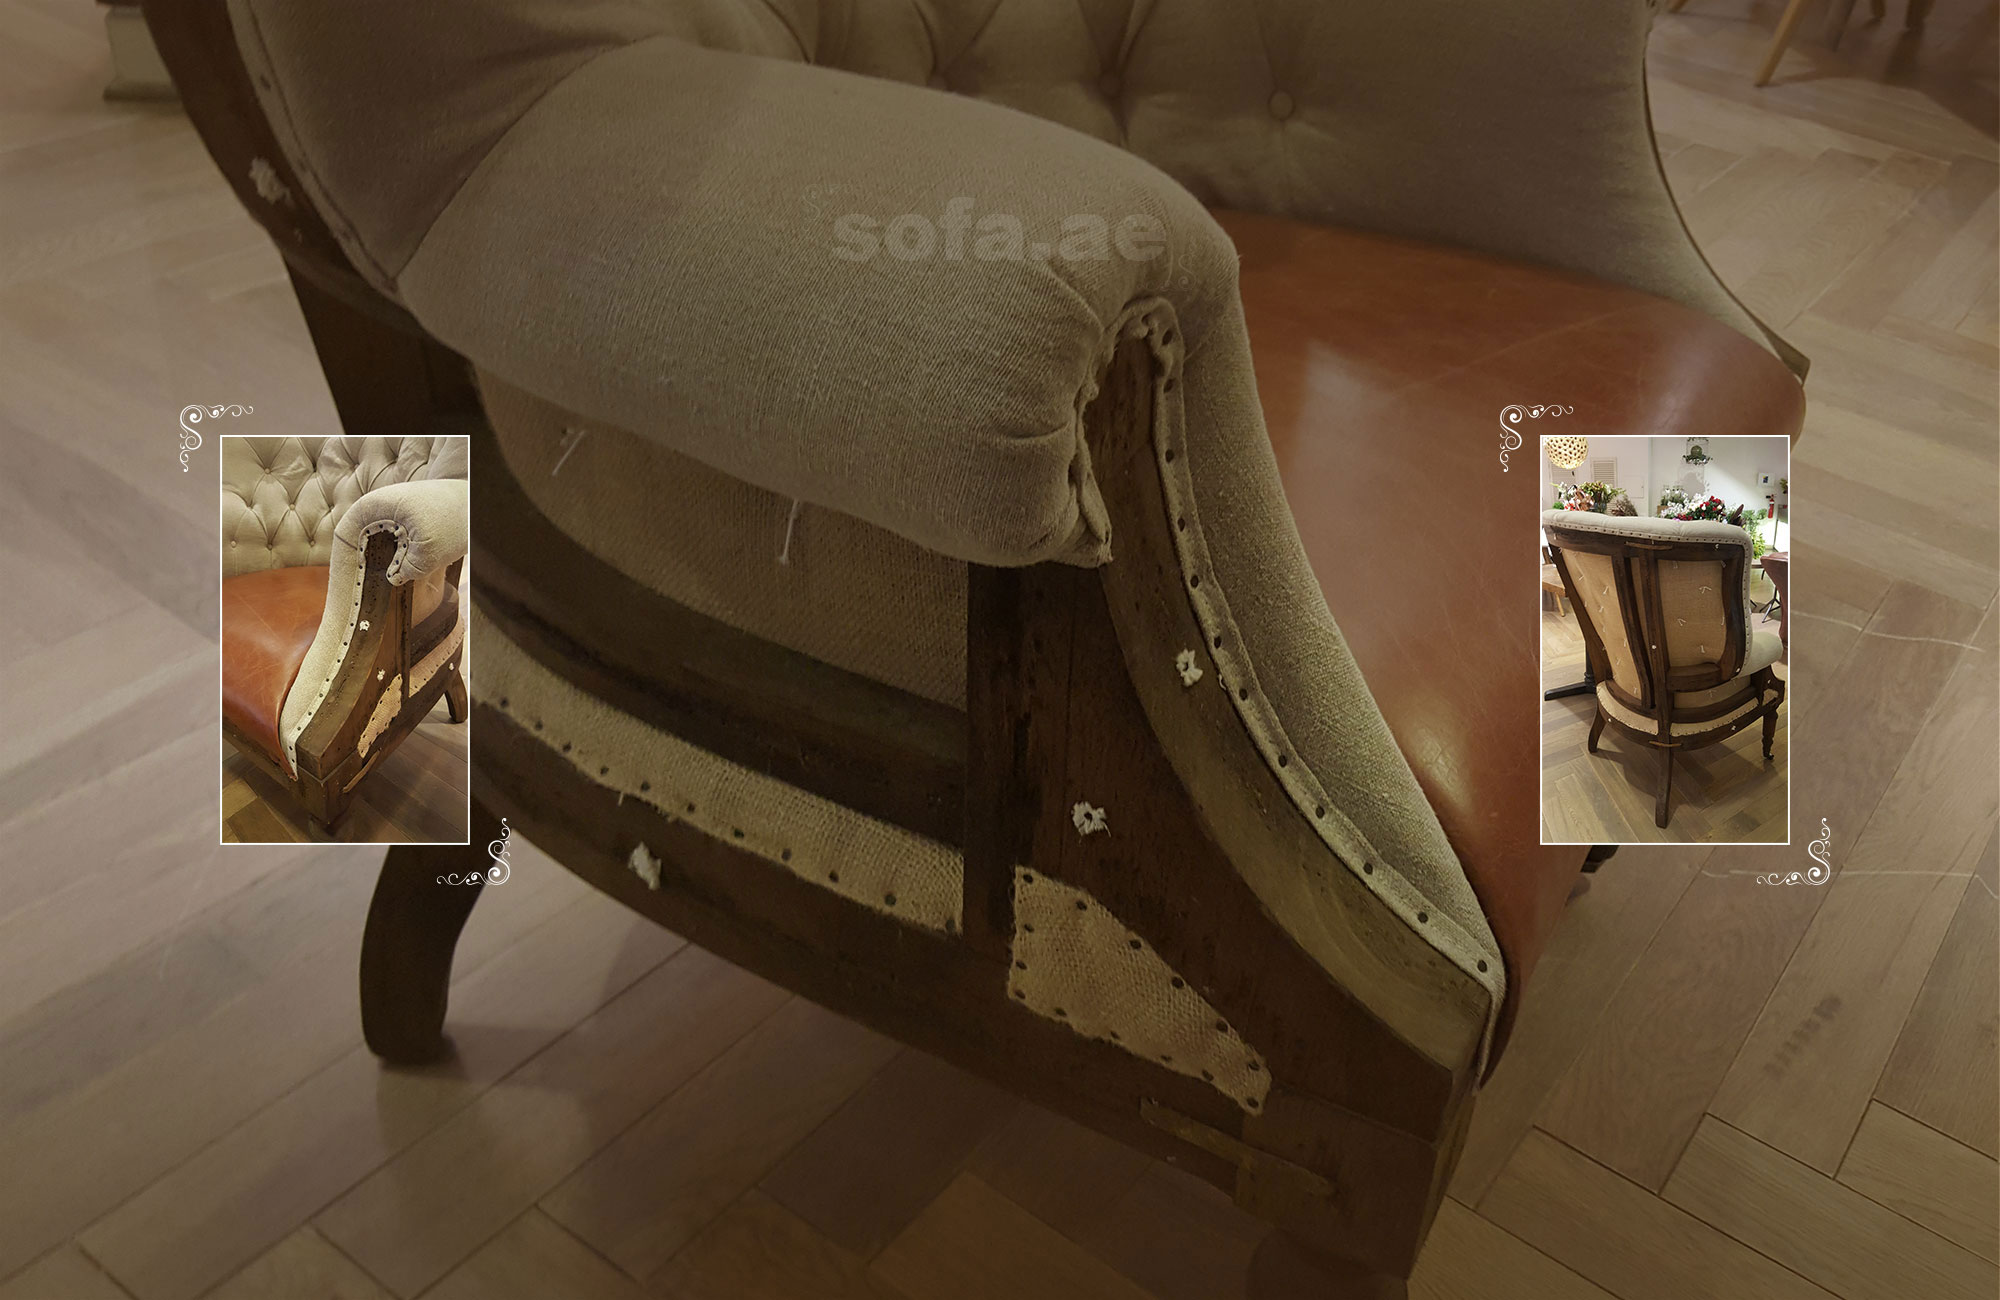 Sofa Repair & Upholstery Dubai | Leather Sofa Repair & Chair Upholstery